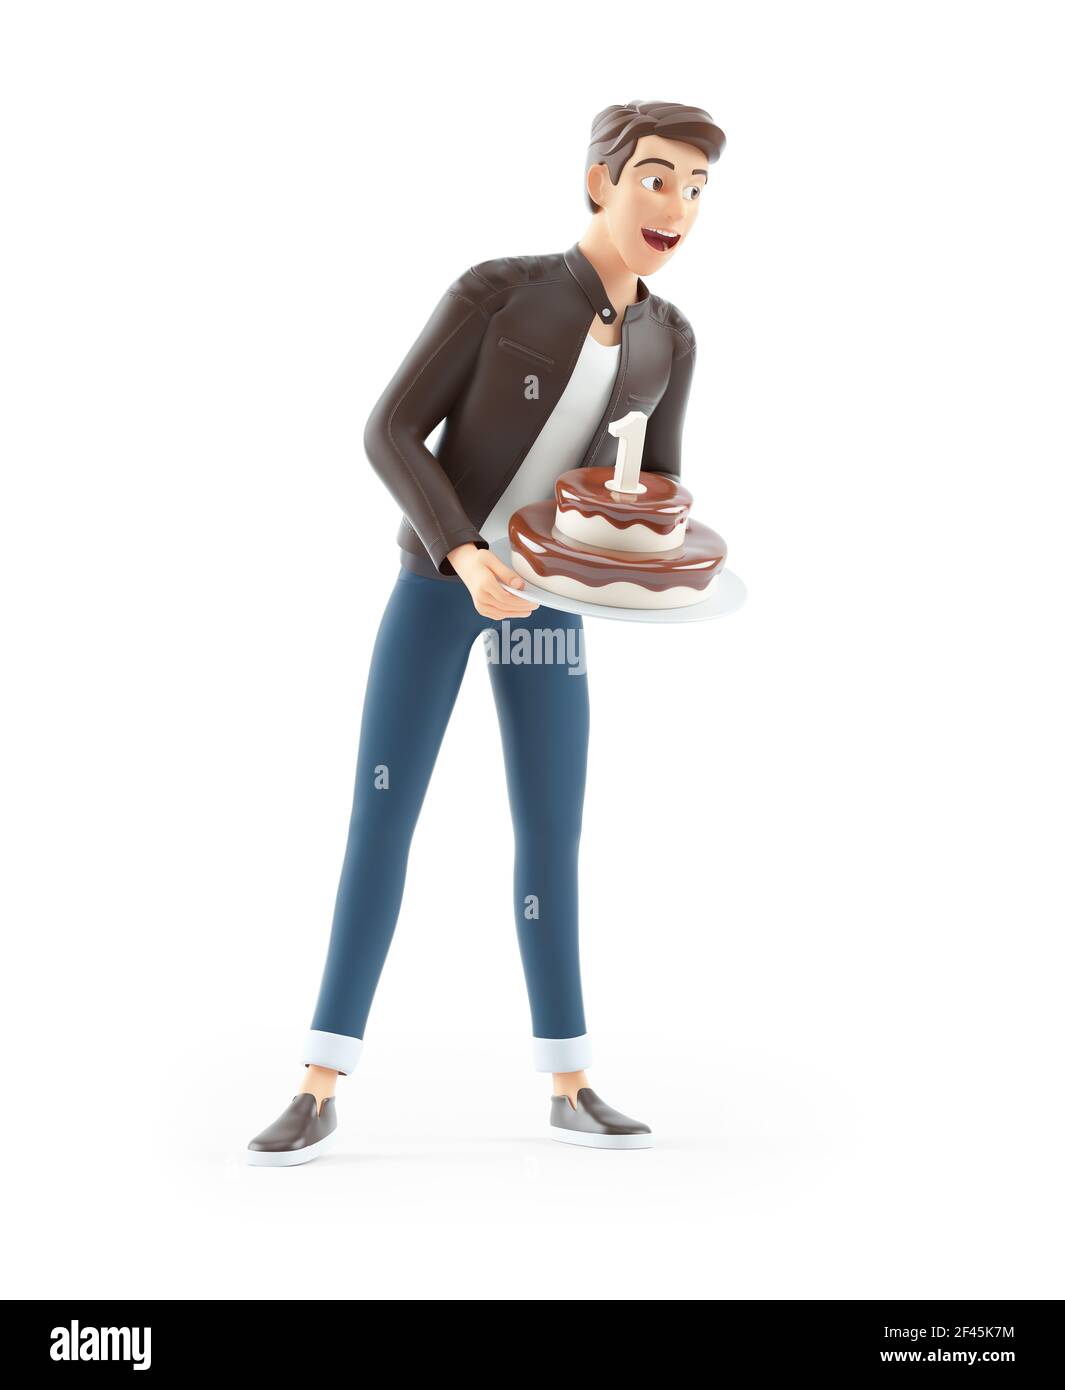 3d cartoon man holding birthday cake, illustration isolated on white background Stock Photo